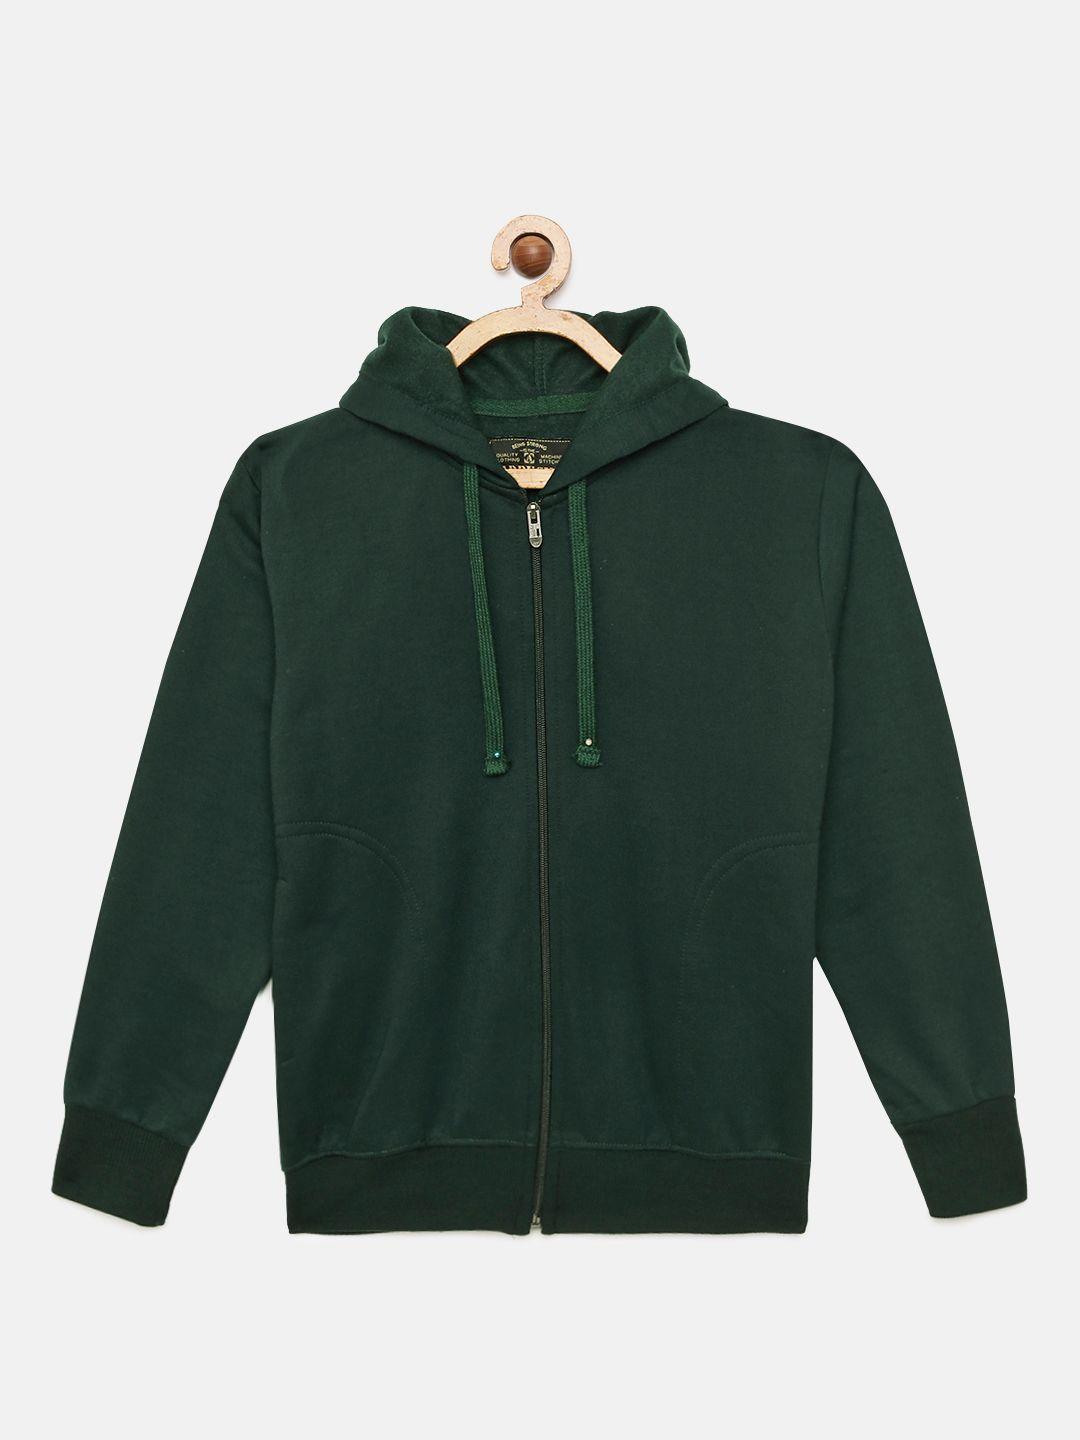 adbucks boys green solid hooded sweatshirt